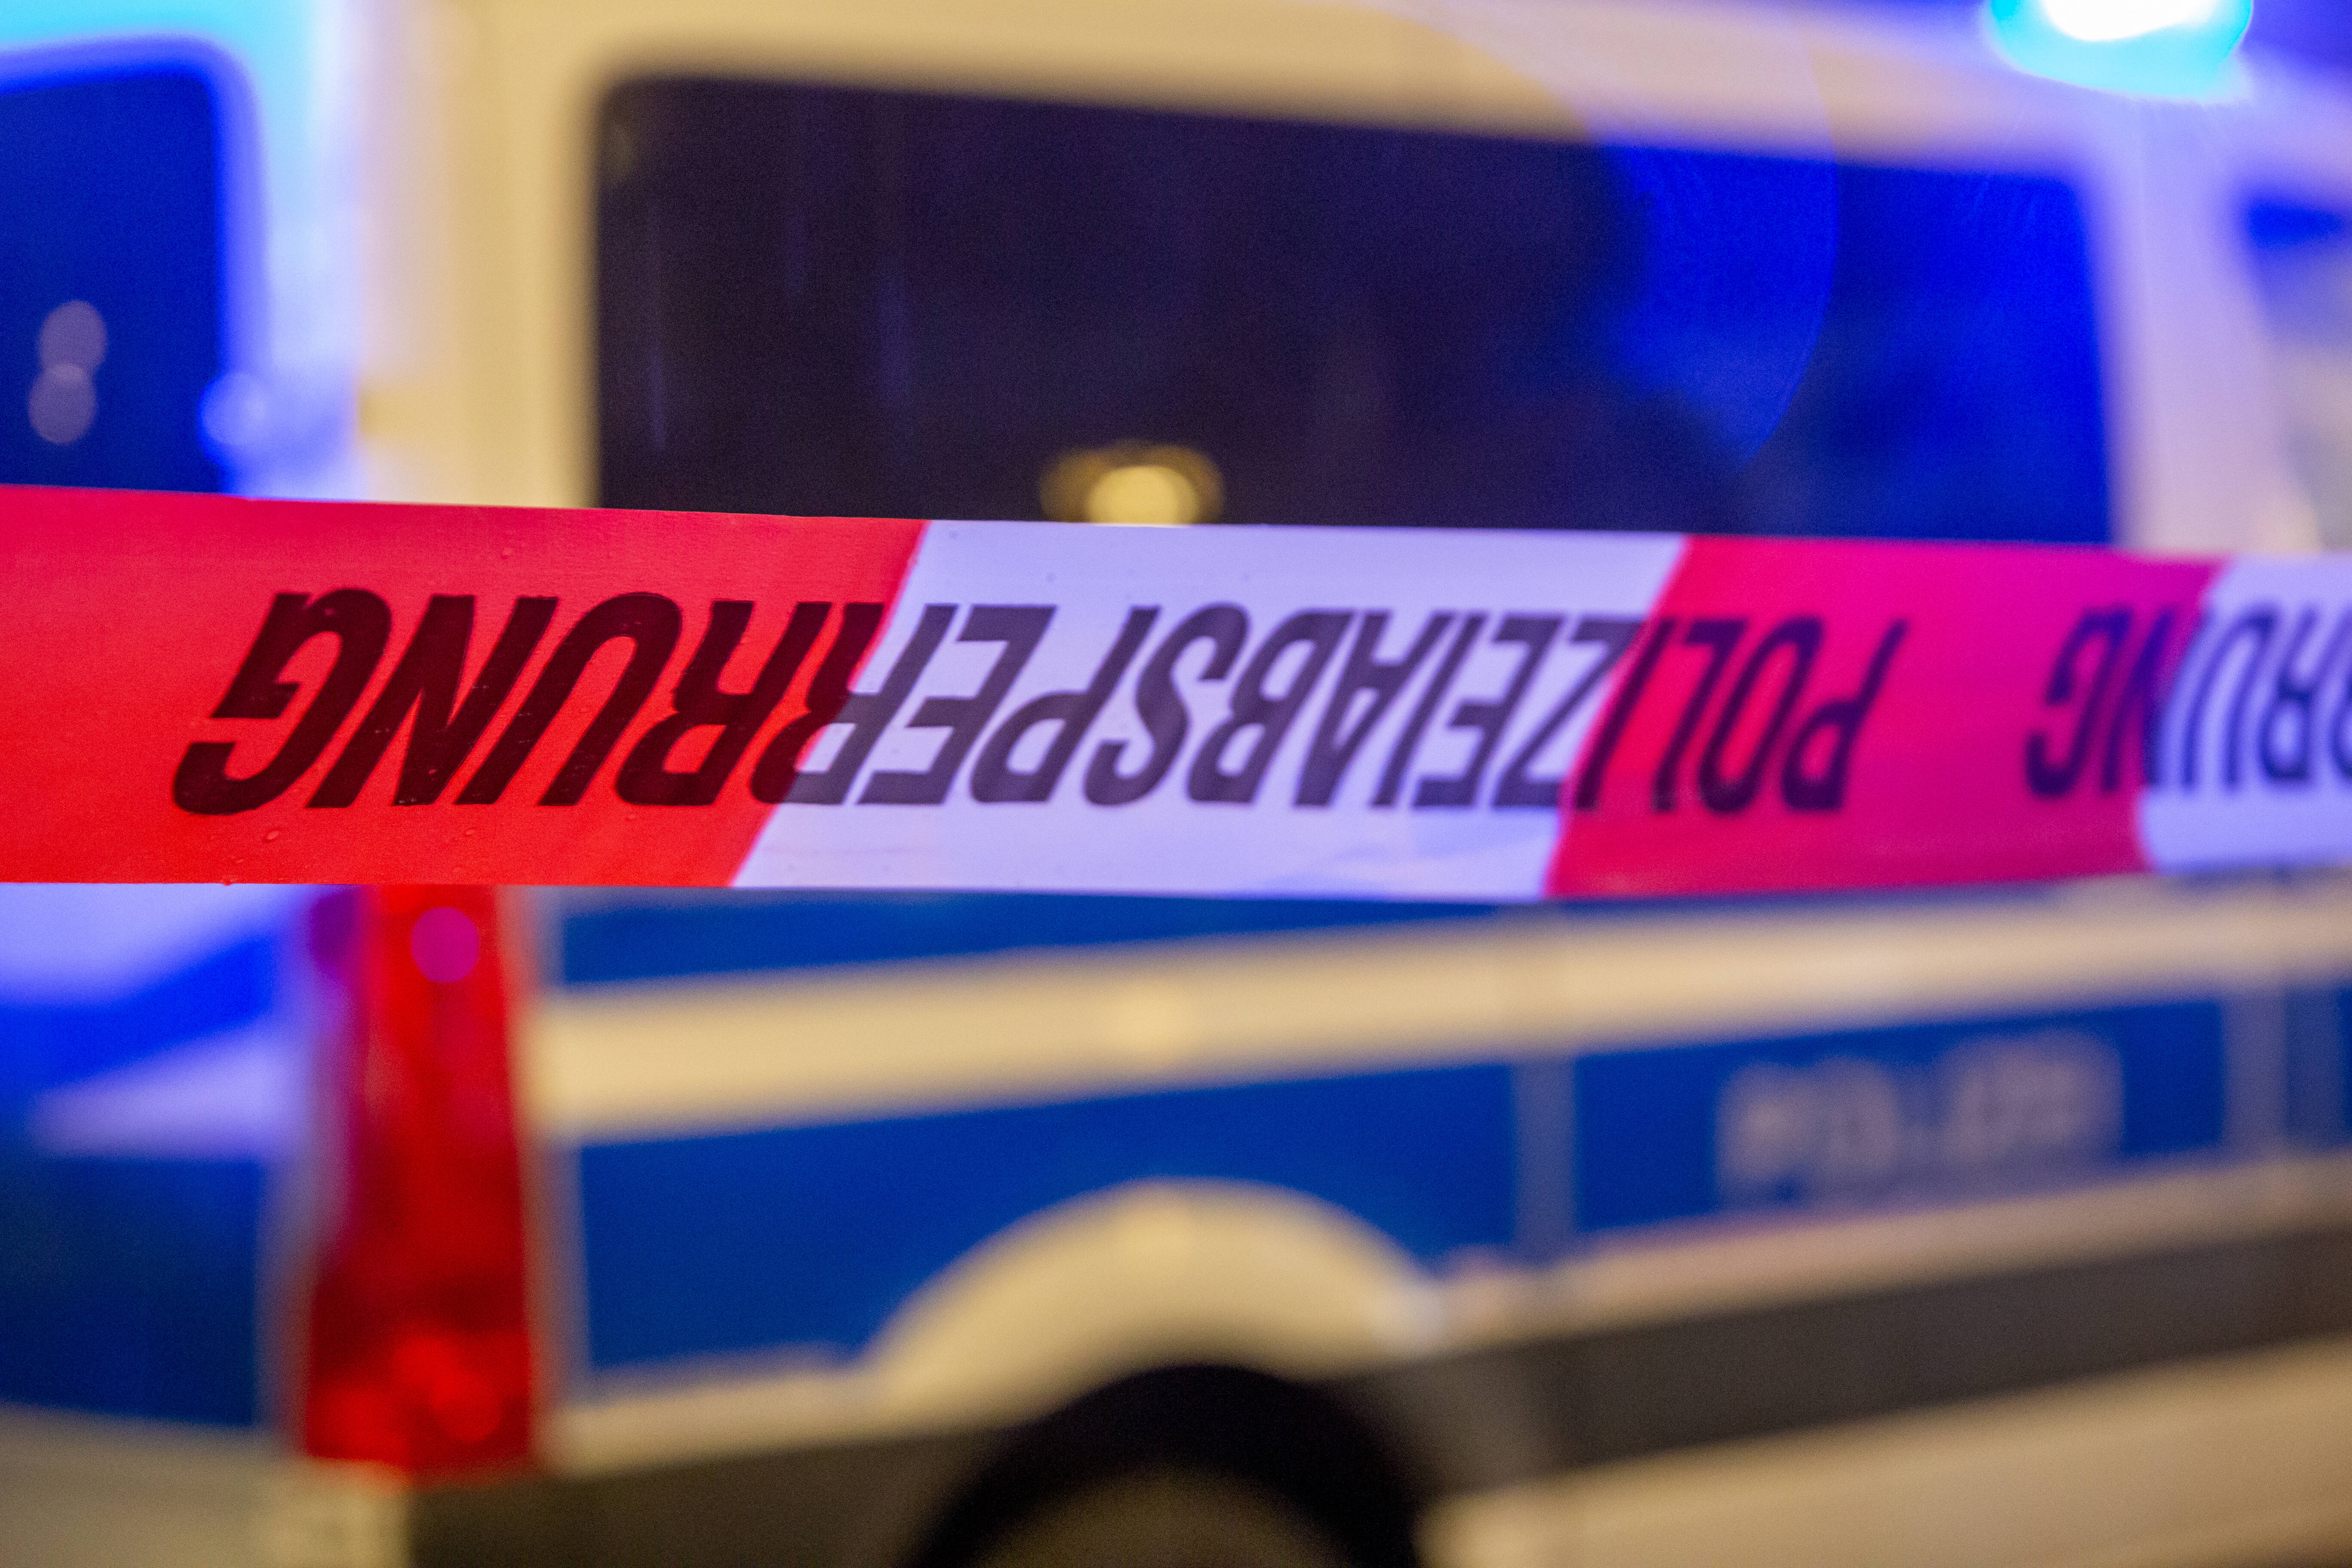 Axtmann stürmt Polizeiwache! Angst und Schrecken in NRW - Mann mit Axt attackiert Polizisten